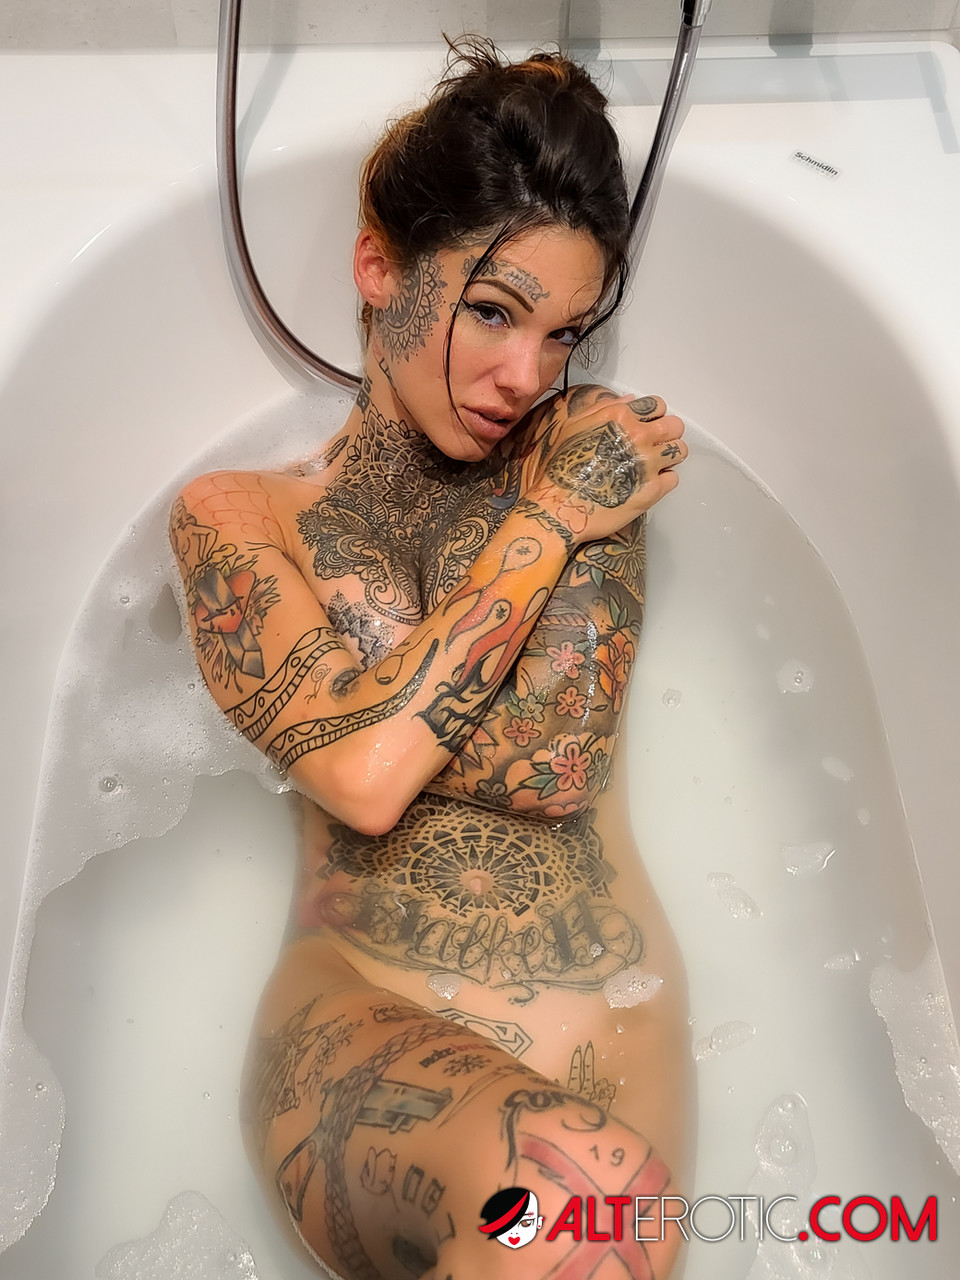 Tattooed girl Lucy Zzz takes a bath after POV sex in a bathtub zdjęcie porno #422562628 | Alt Erotic Pics, Lucy Zzz, Tattoo, mobilne porno